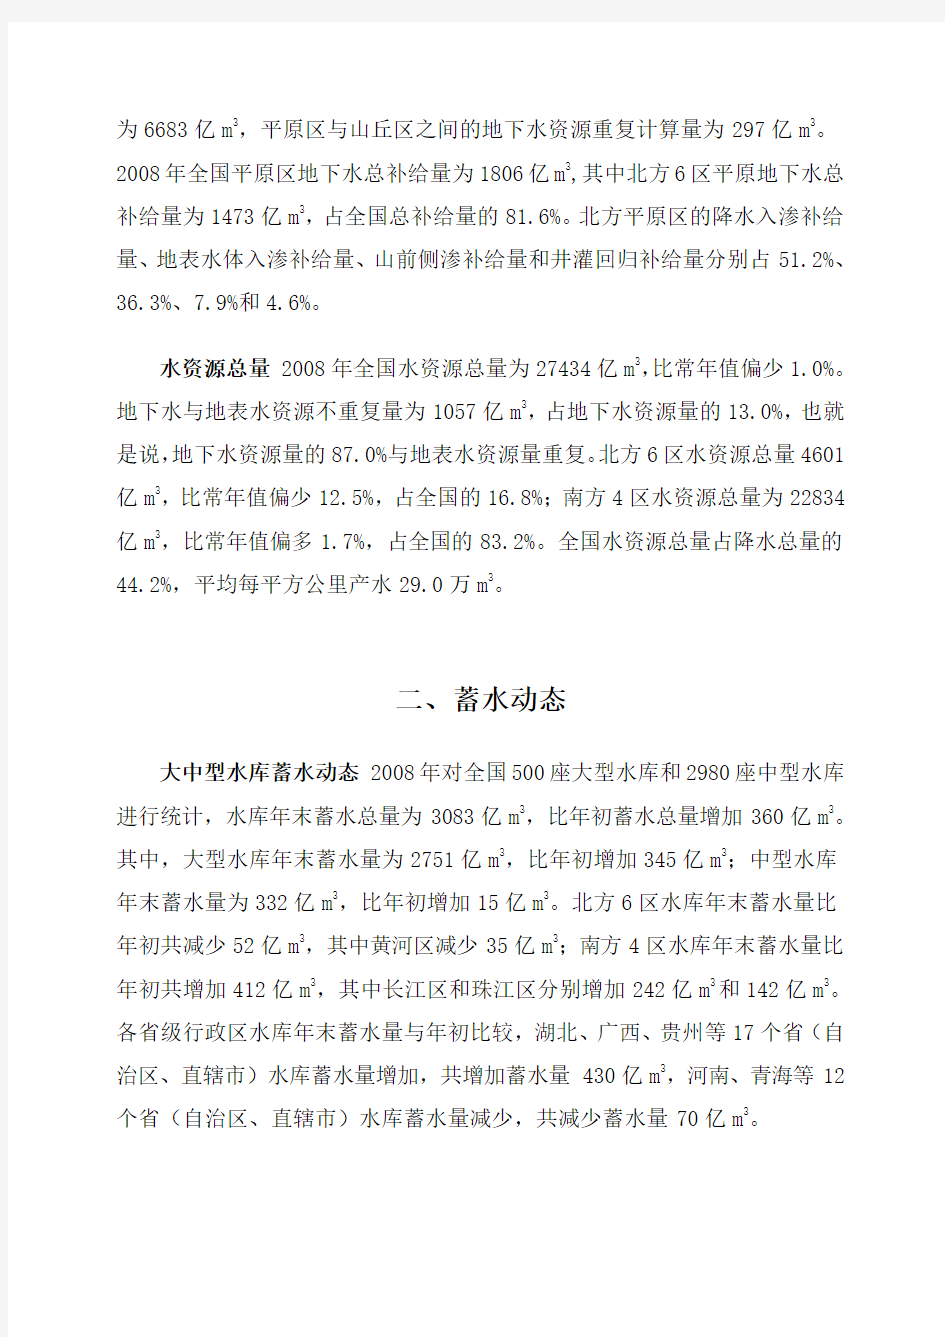 2008年中国水资源公报